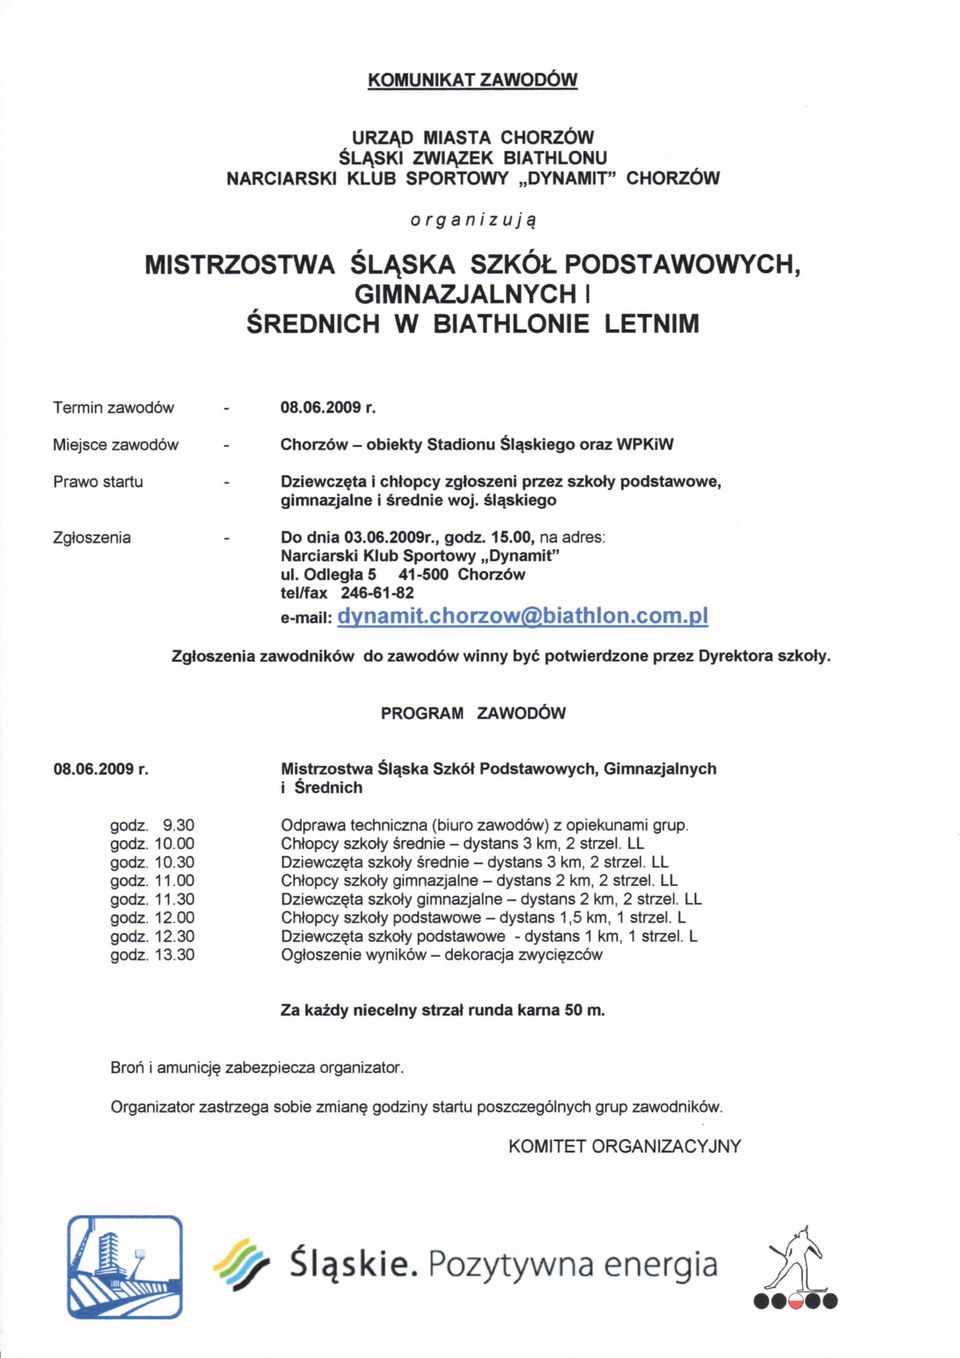 06.2009r., godz. 15.00, na adres: Narciarski Klub Sportowy,,Dynamit" ul. Odlegla 5 41-500 Chorzow tel/fax 246-61-82 e-maii: dynamitchorzow@biathlon.com.